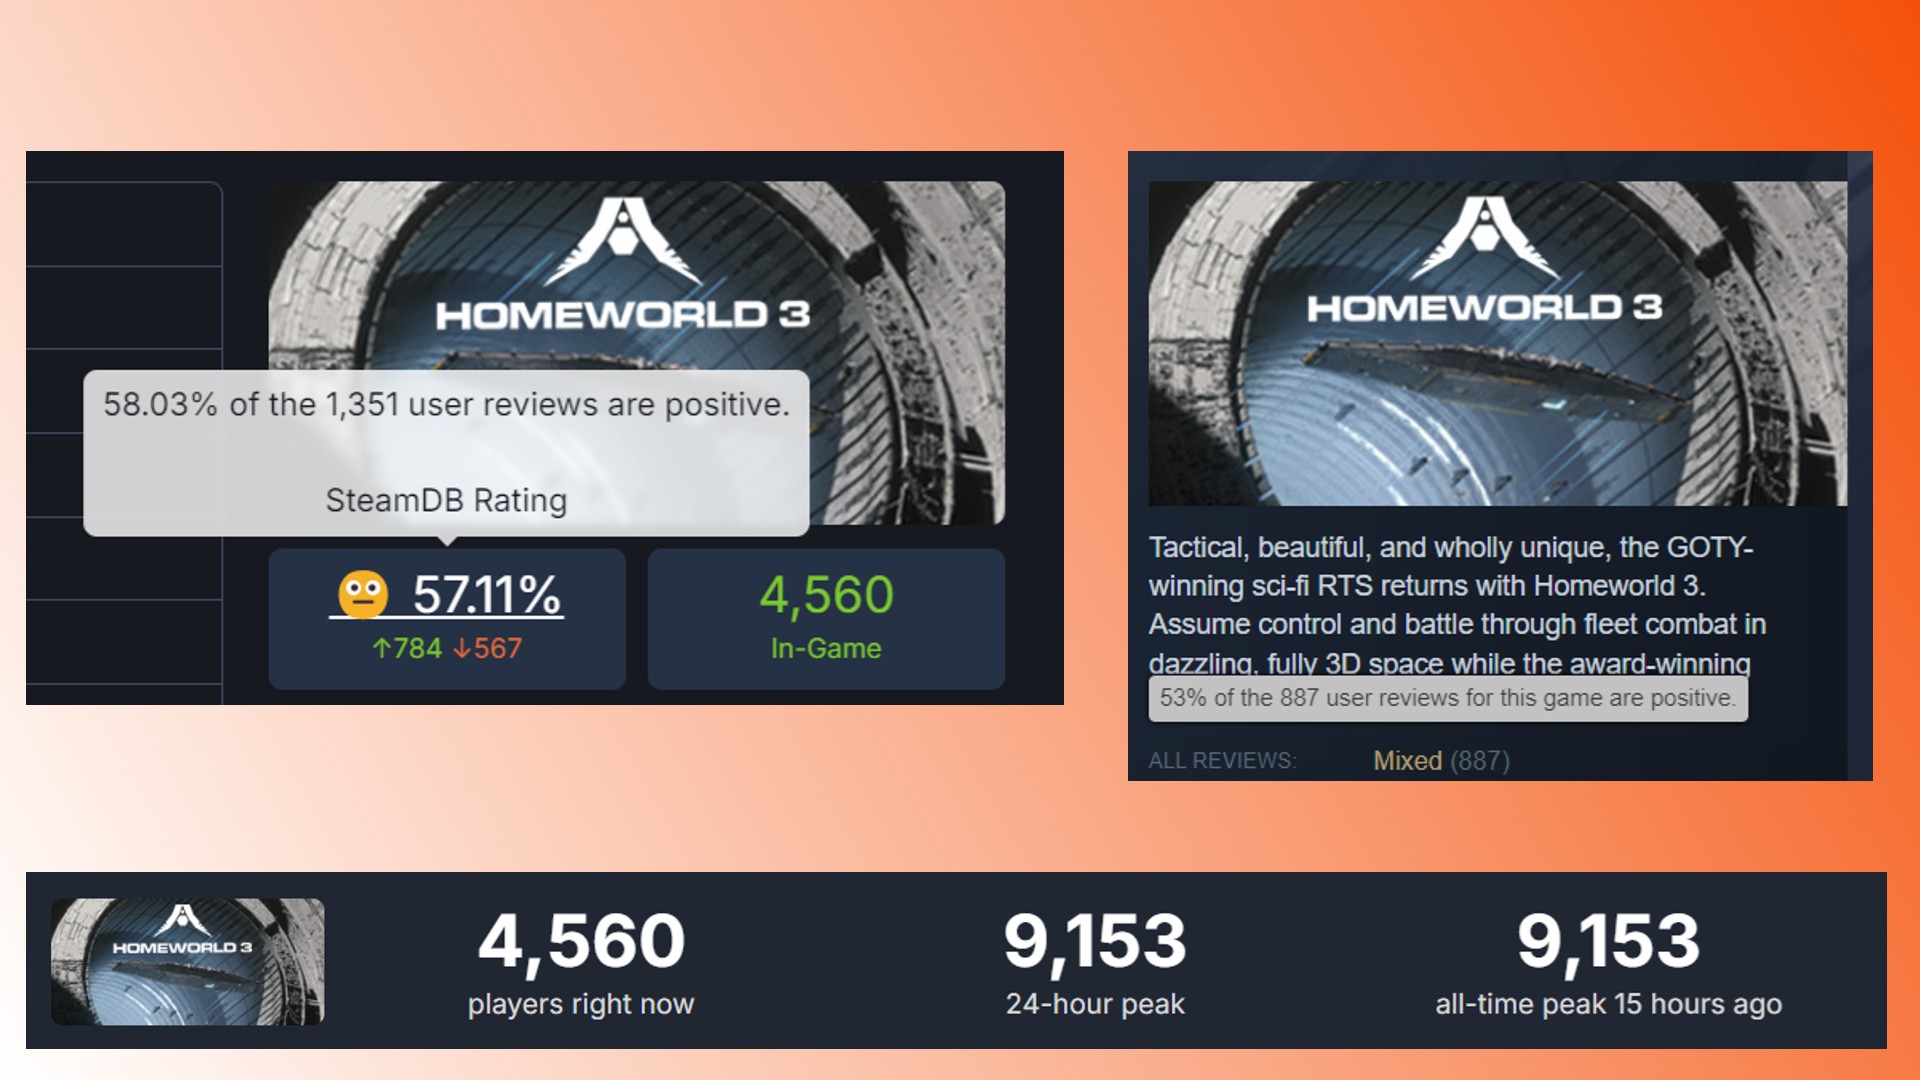 Homeworld 3 Reseñas del juego Steam RTS: Reseñas de jugadores y puntuaciones para el juego Steam RTS Homeworld 3